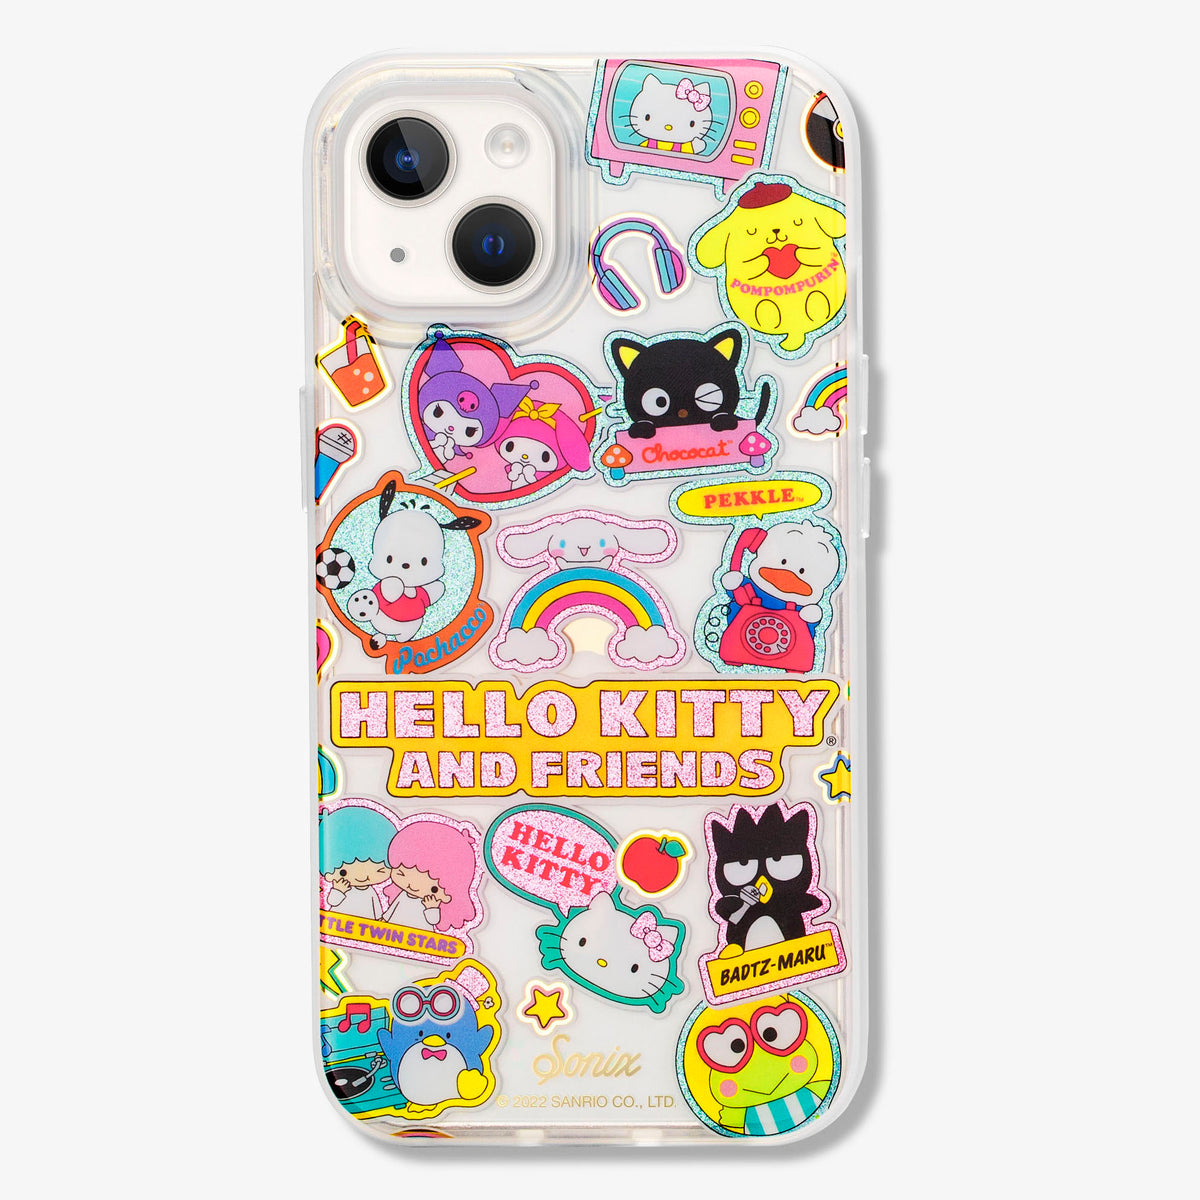 Girl x Sanrio Hello Kitty Sticker